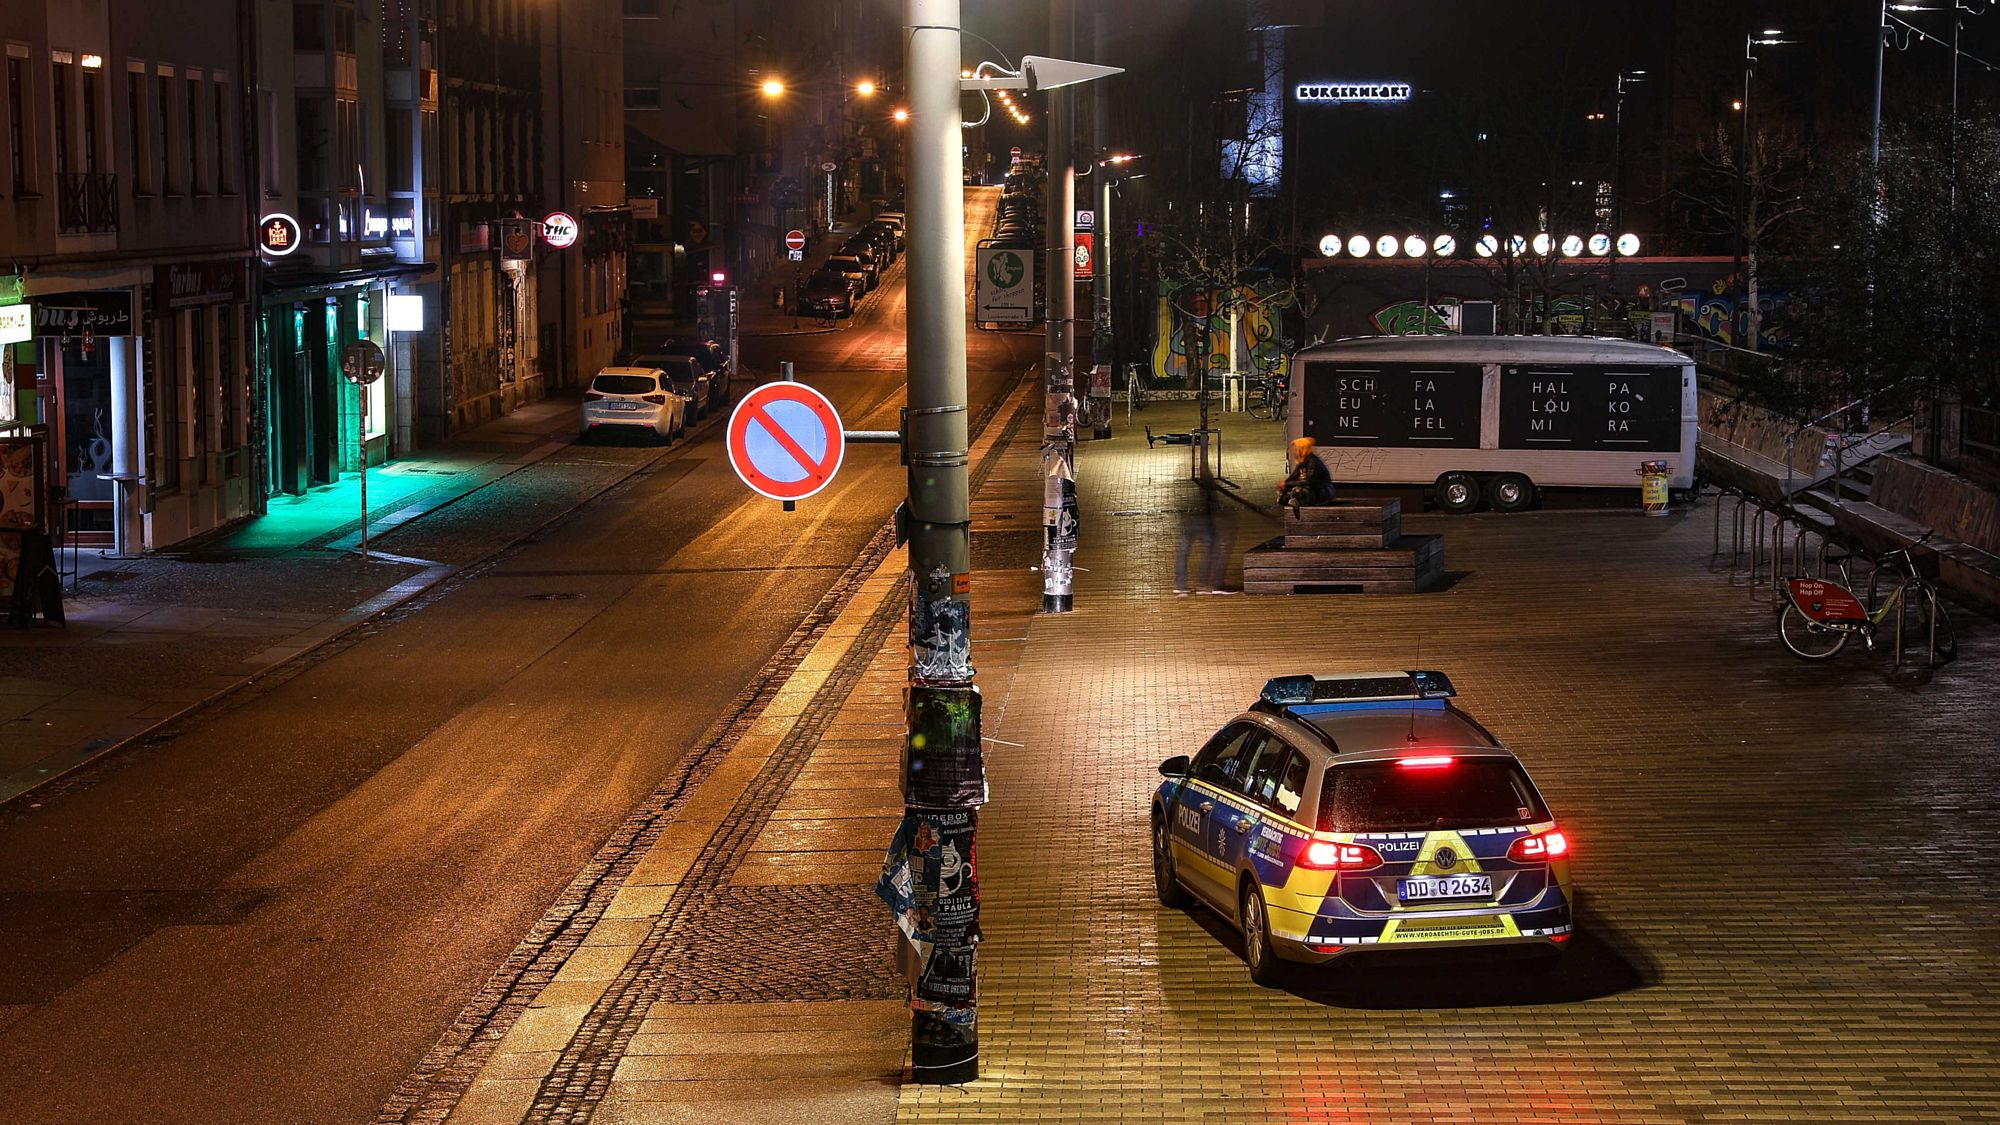 Scheune-Vorplatz in der Nacht zum Sonnabend. Die Polizei kontrolliert die Ausgangsbeschränkungen. Foto: Tino Plunert